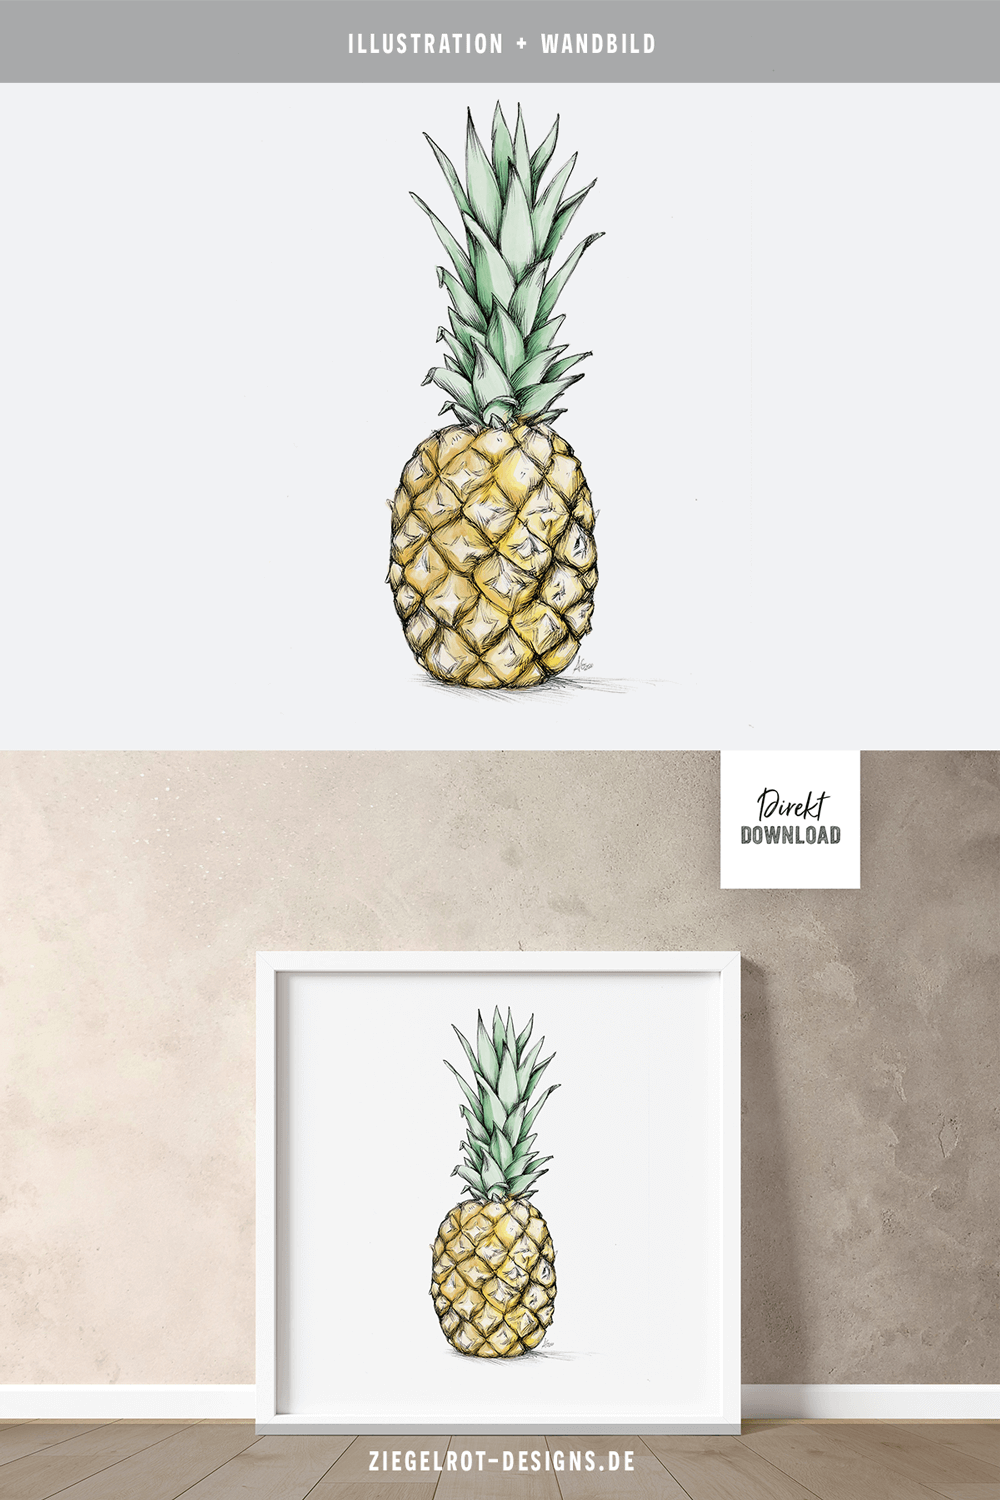 Wandbild-Motiv mit Ananas als Illustration, Direkt-Download zum Kauf, © Annika Gandelheid